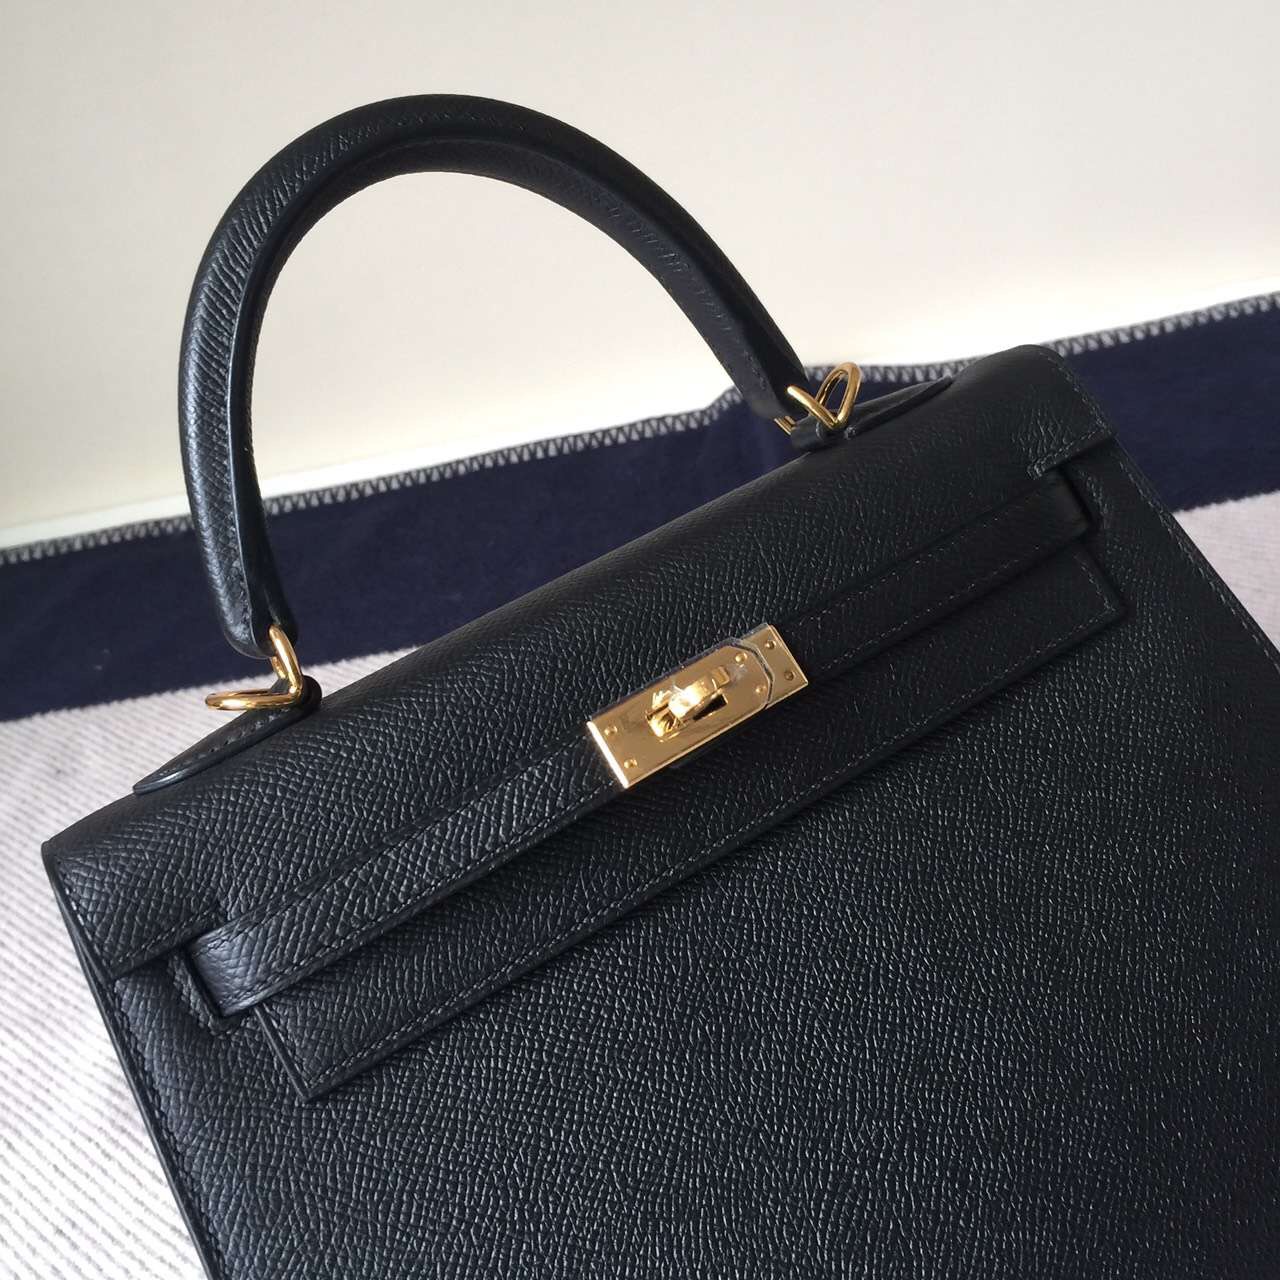 Fashion Hermes CK89 Black Epsom Leather Kelly Bag 25cm